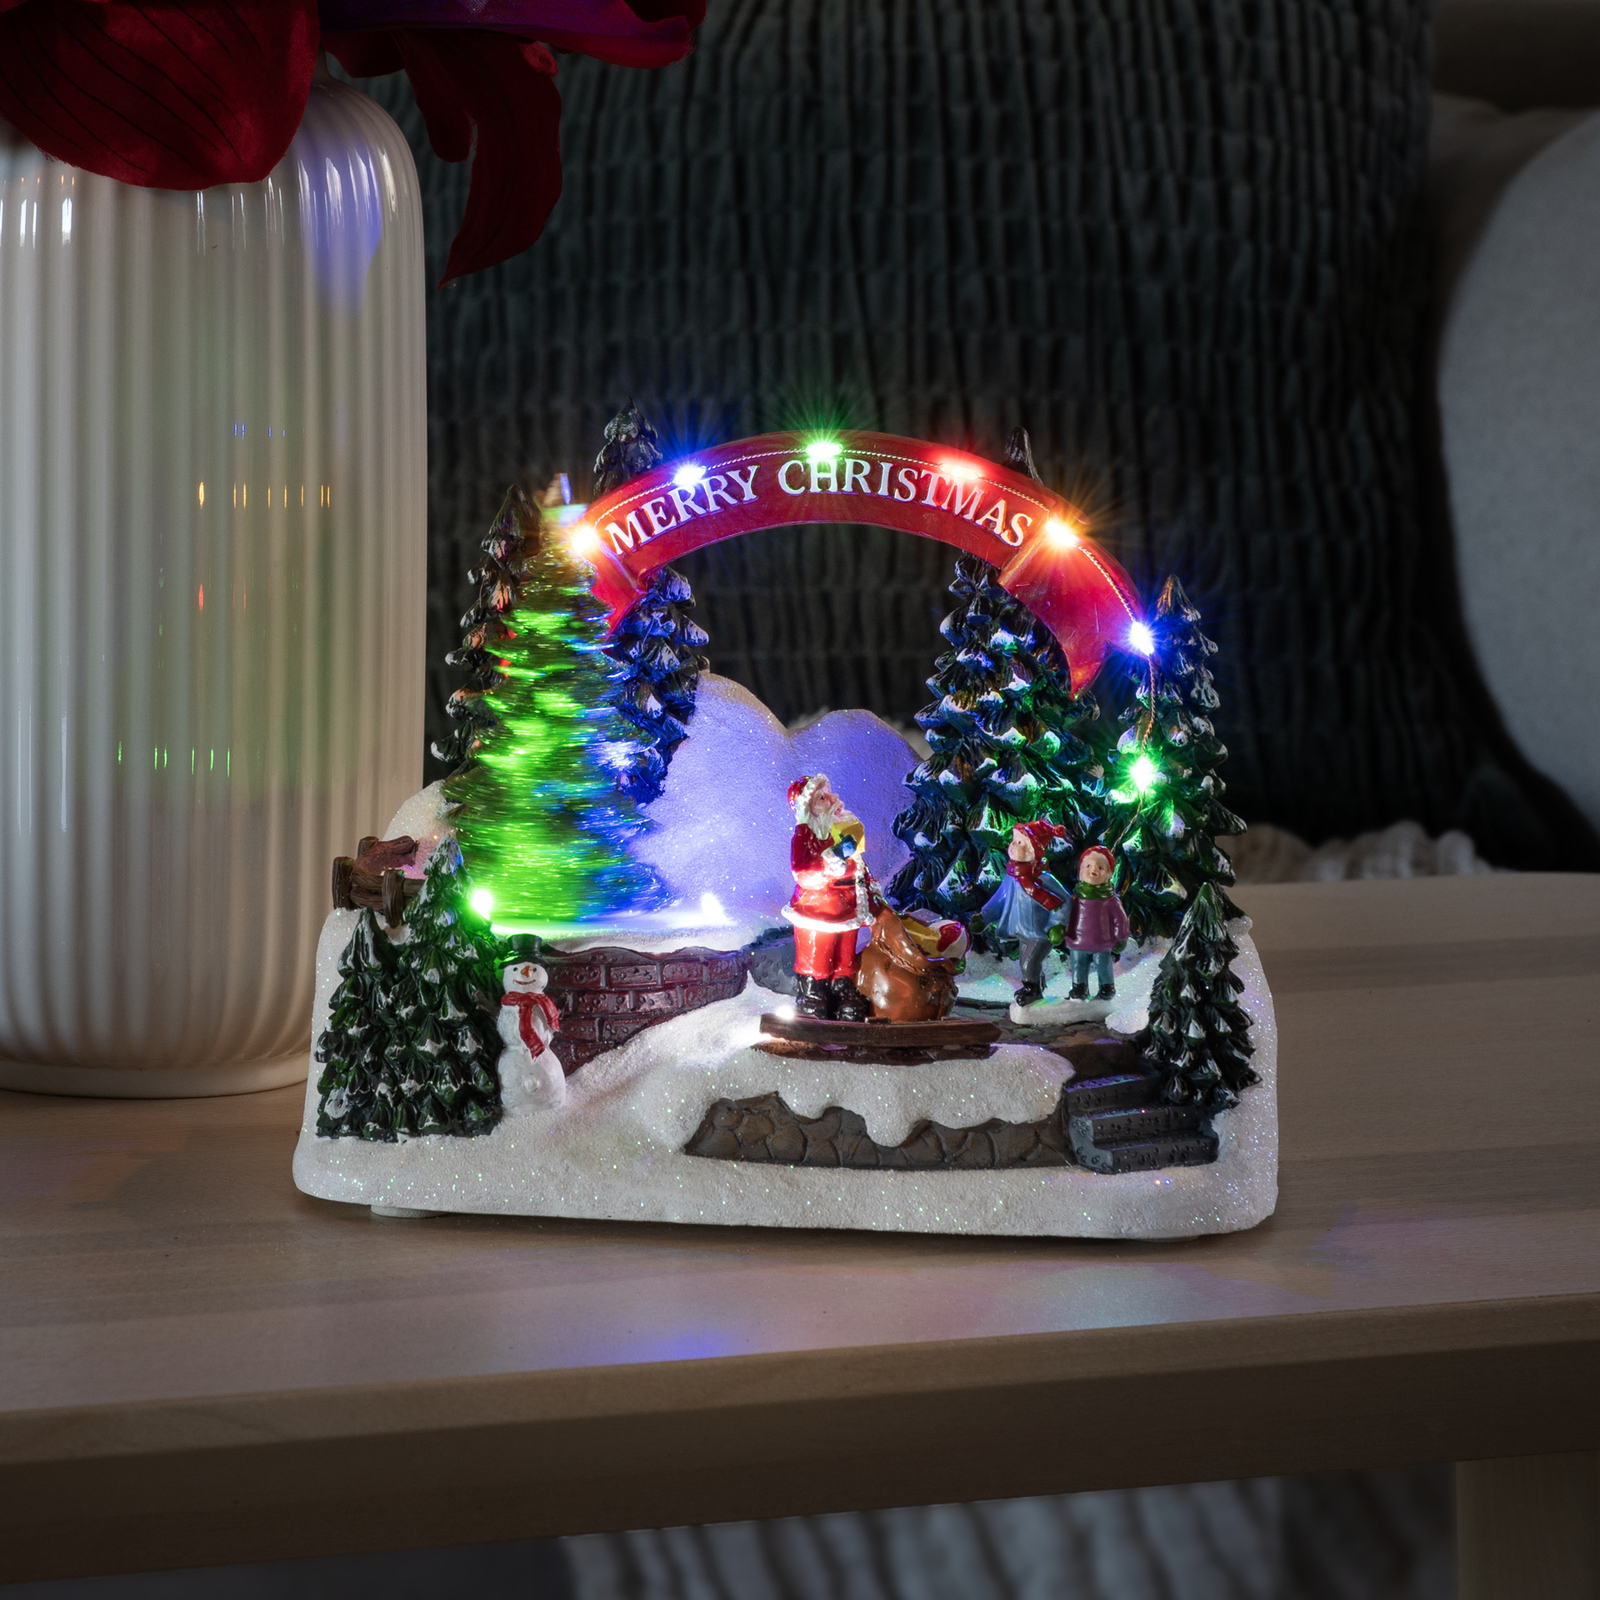 Dekoračné LED svietidlo Santa a deti, s hudbou